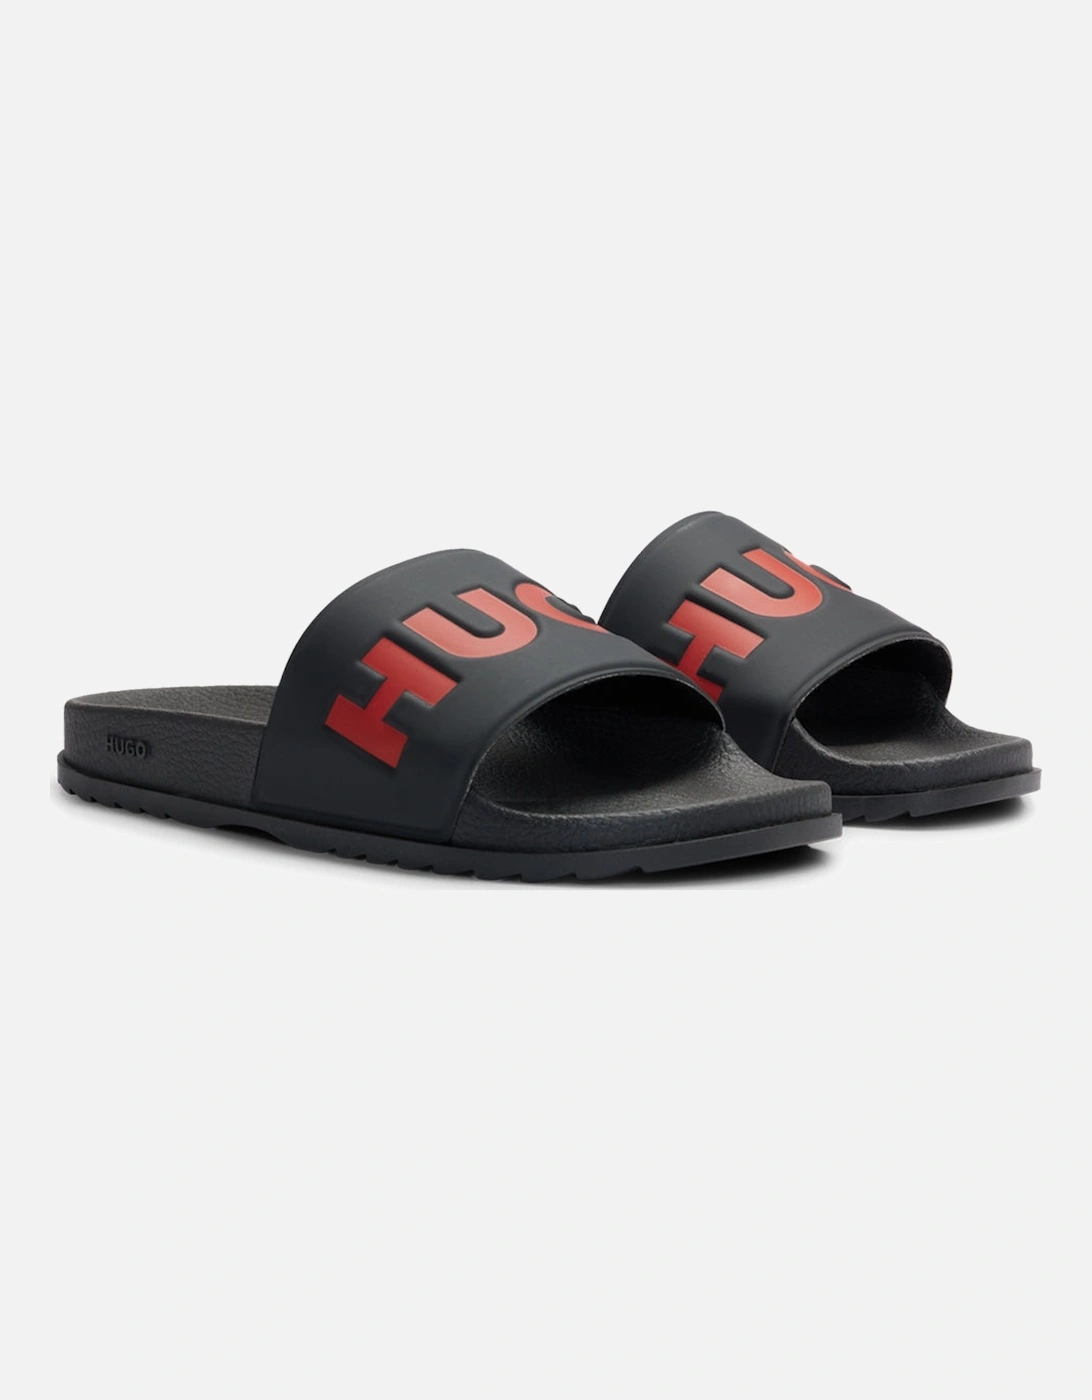 Match Slider Sandals, Black/Red, 10 of 9